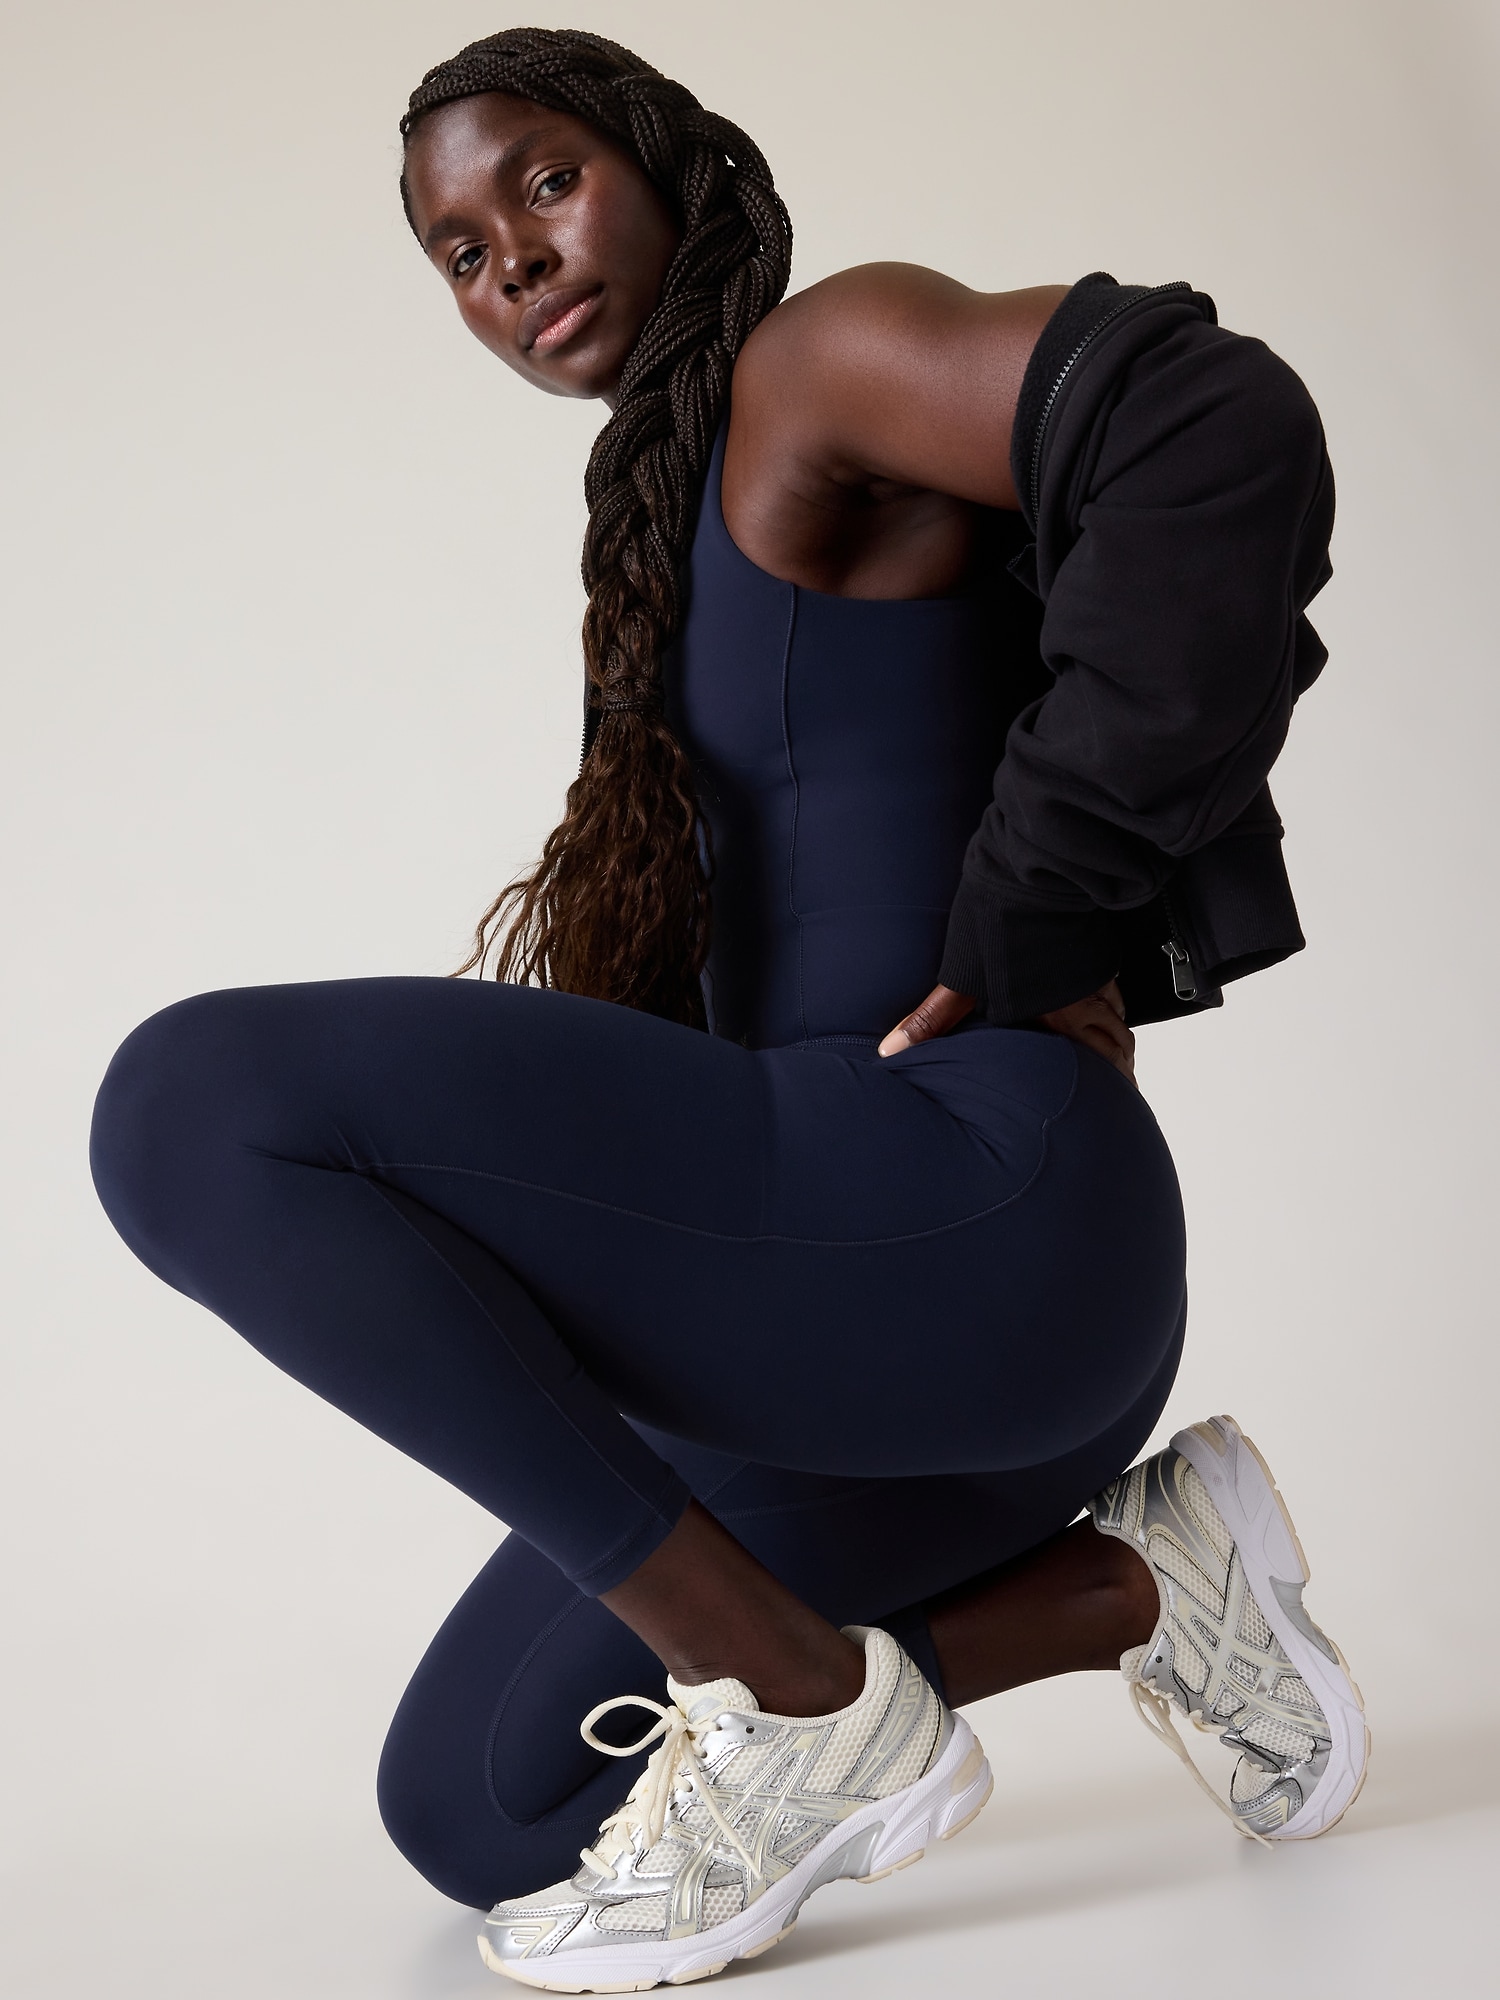 Women's Bodysuits. Nike CA